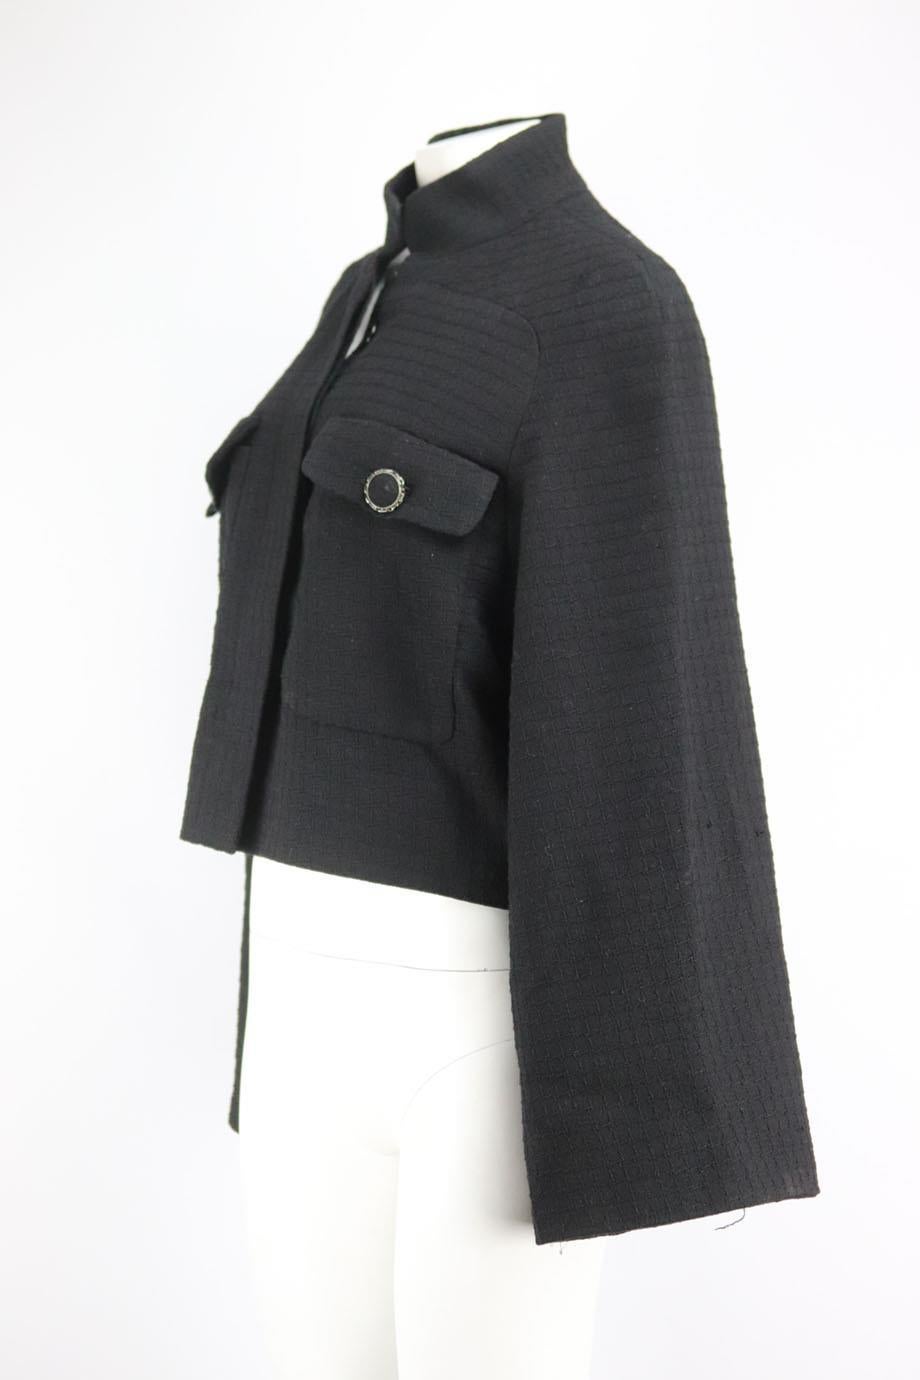 Black Chanel 2015 Wool Blend Tweed Jacket Fr 44 Uk 16